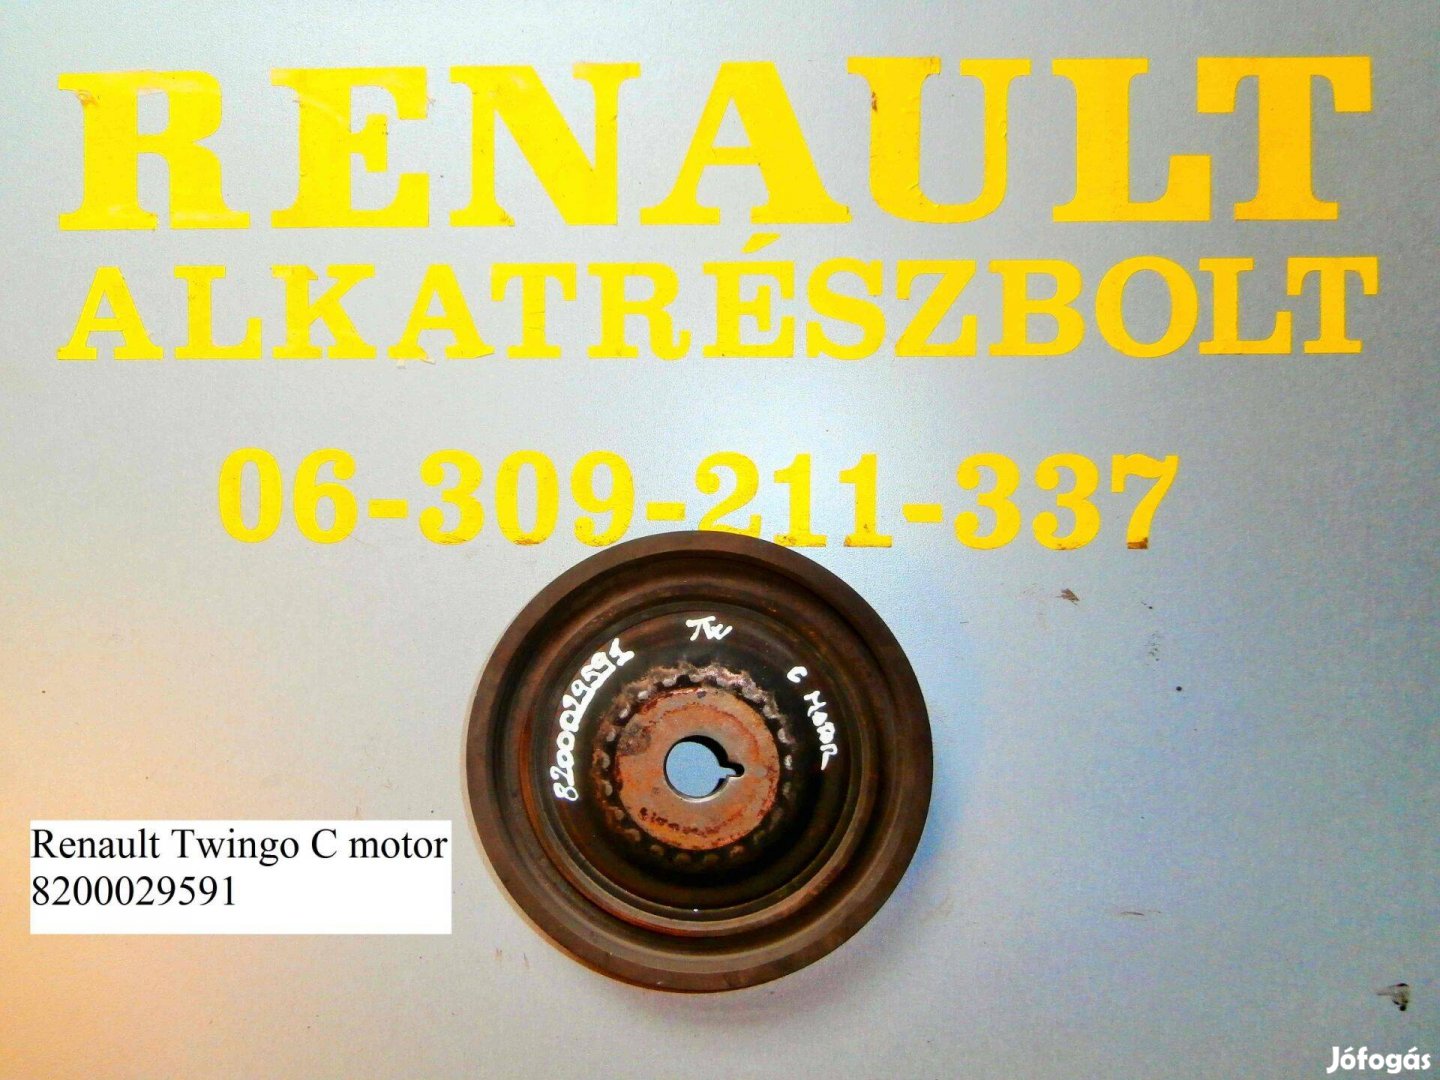 Renault Twingo C motor 8200029591 főtengely ékszíjtárcsa